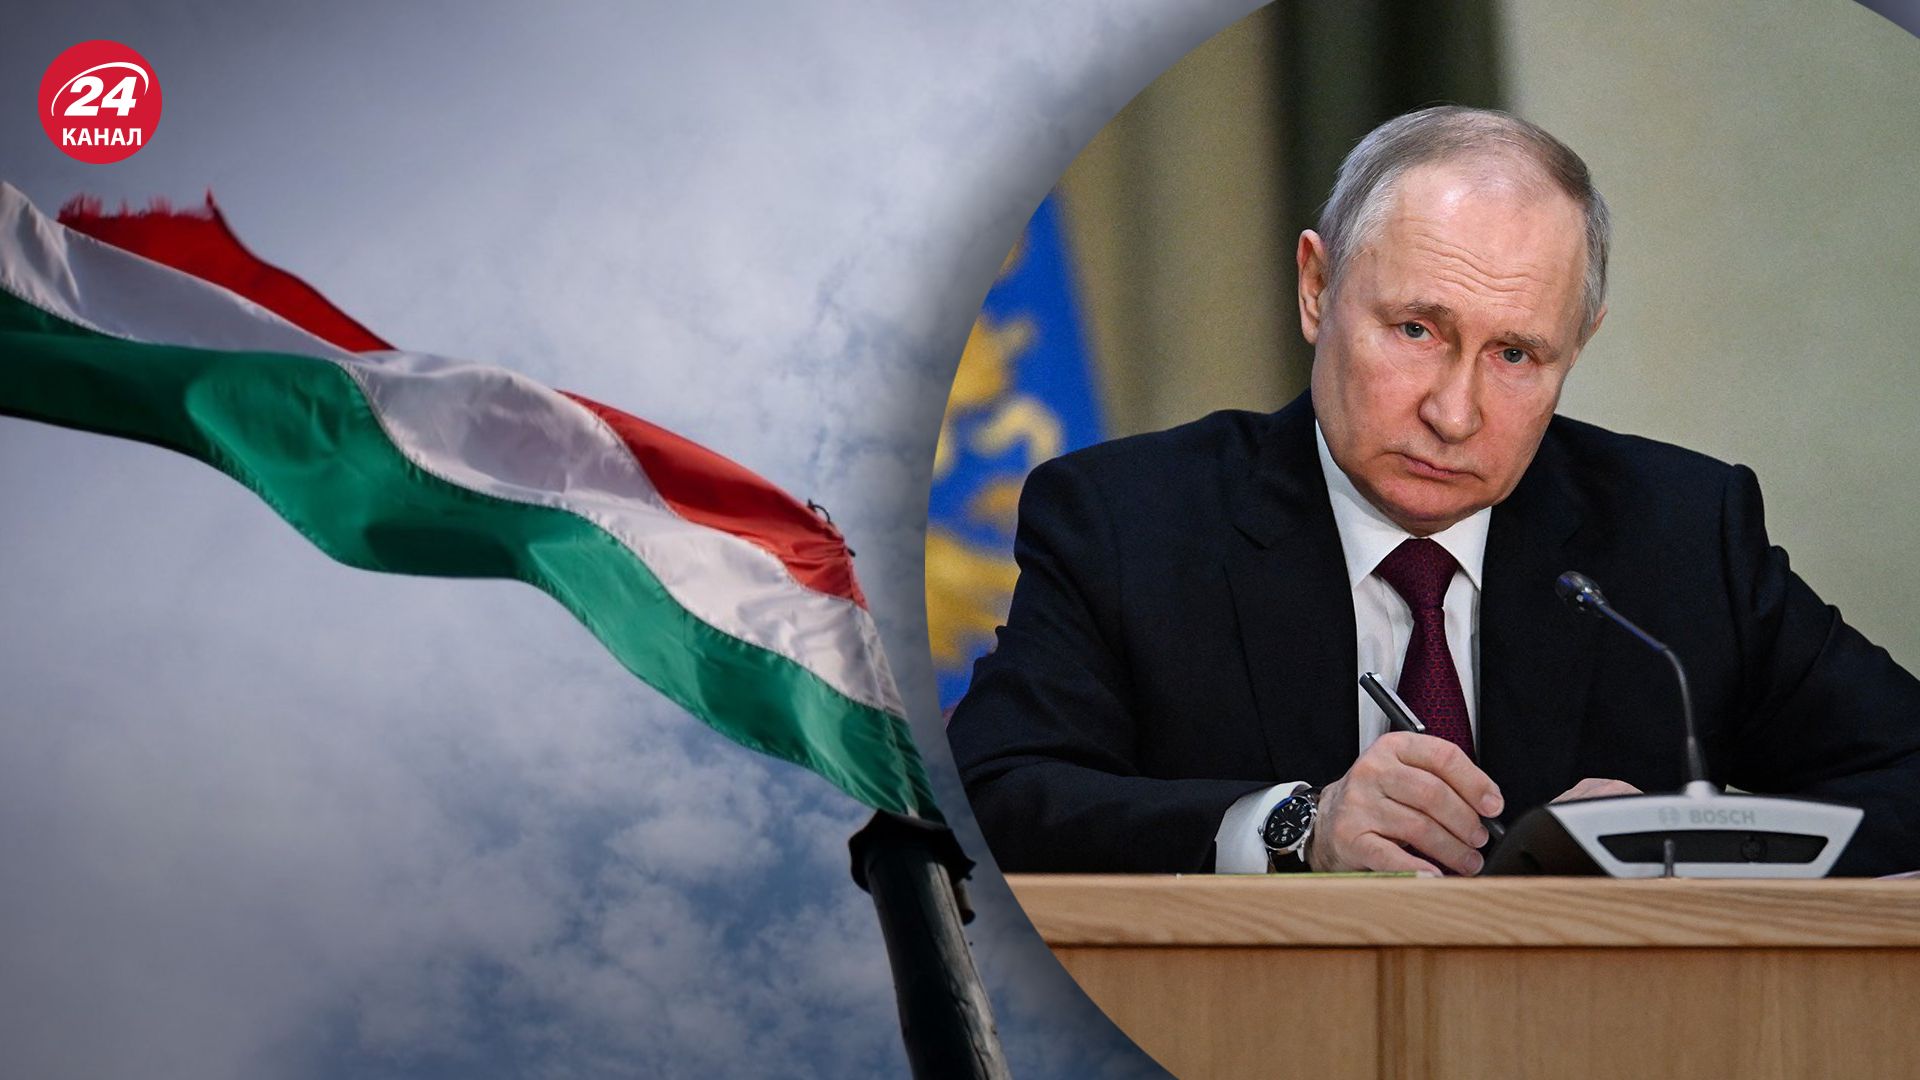 Угорщина заблокувала спільну заяву ЄС щодо ордеру на арешт Путіна